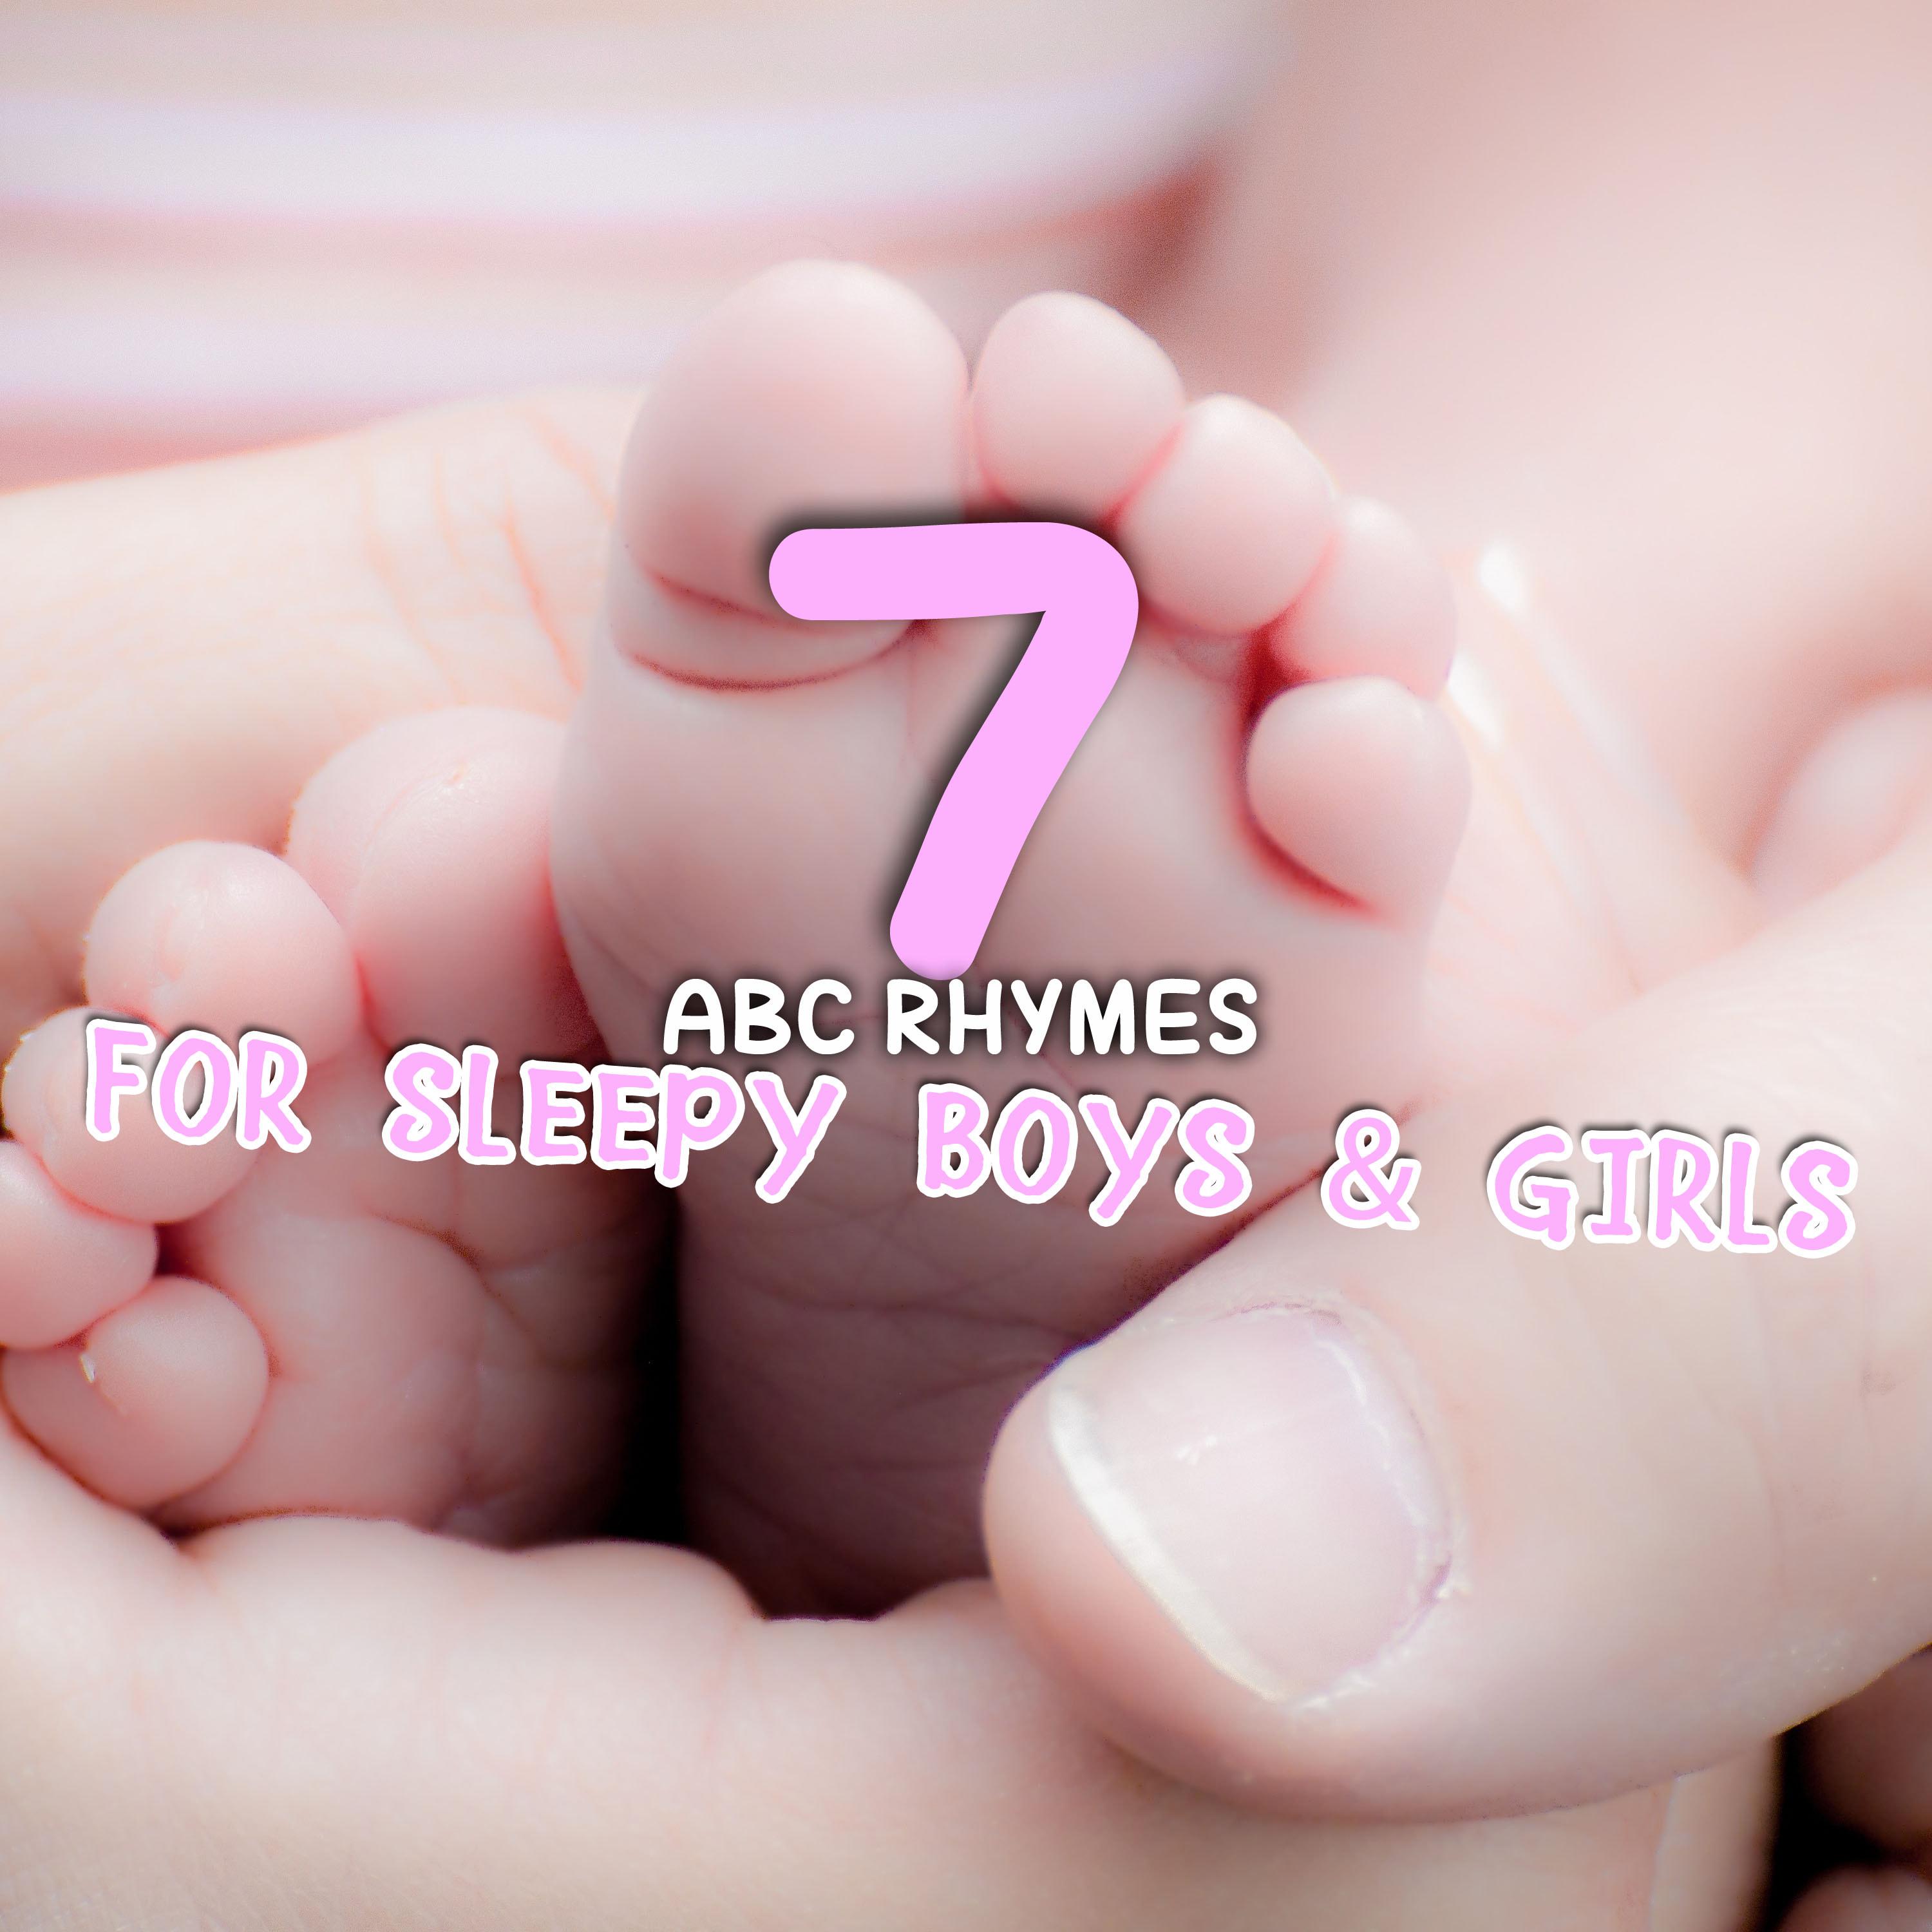 #7 ABC Rhymes for Sleepy Boys & Girls